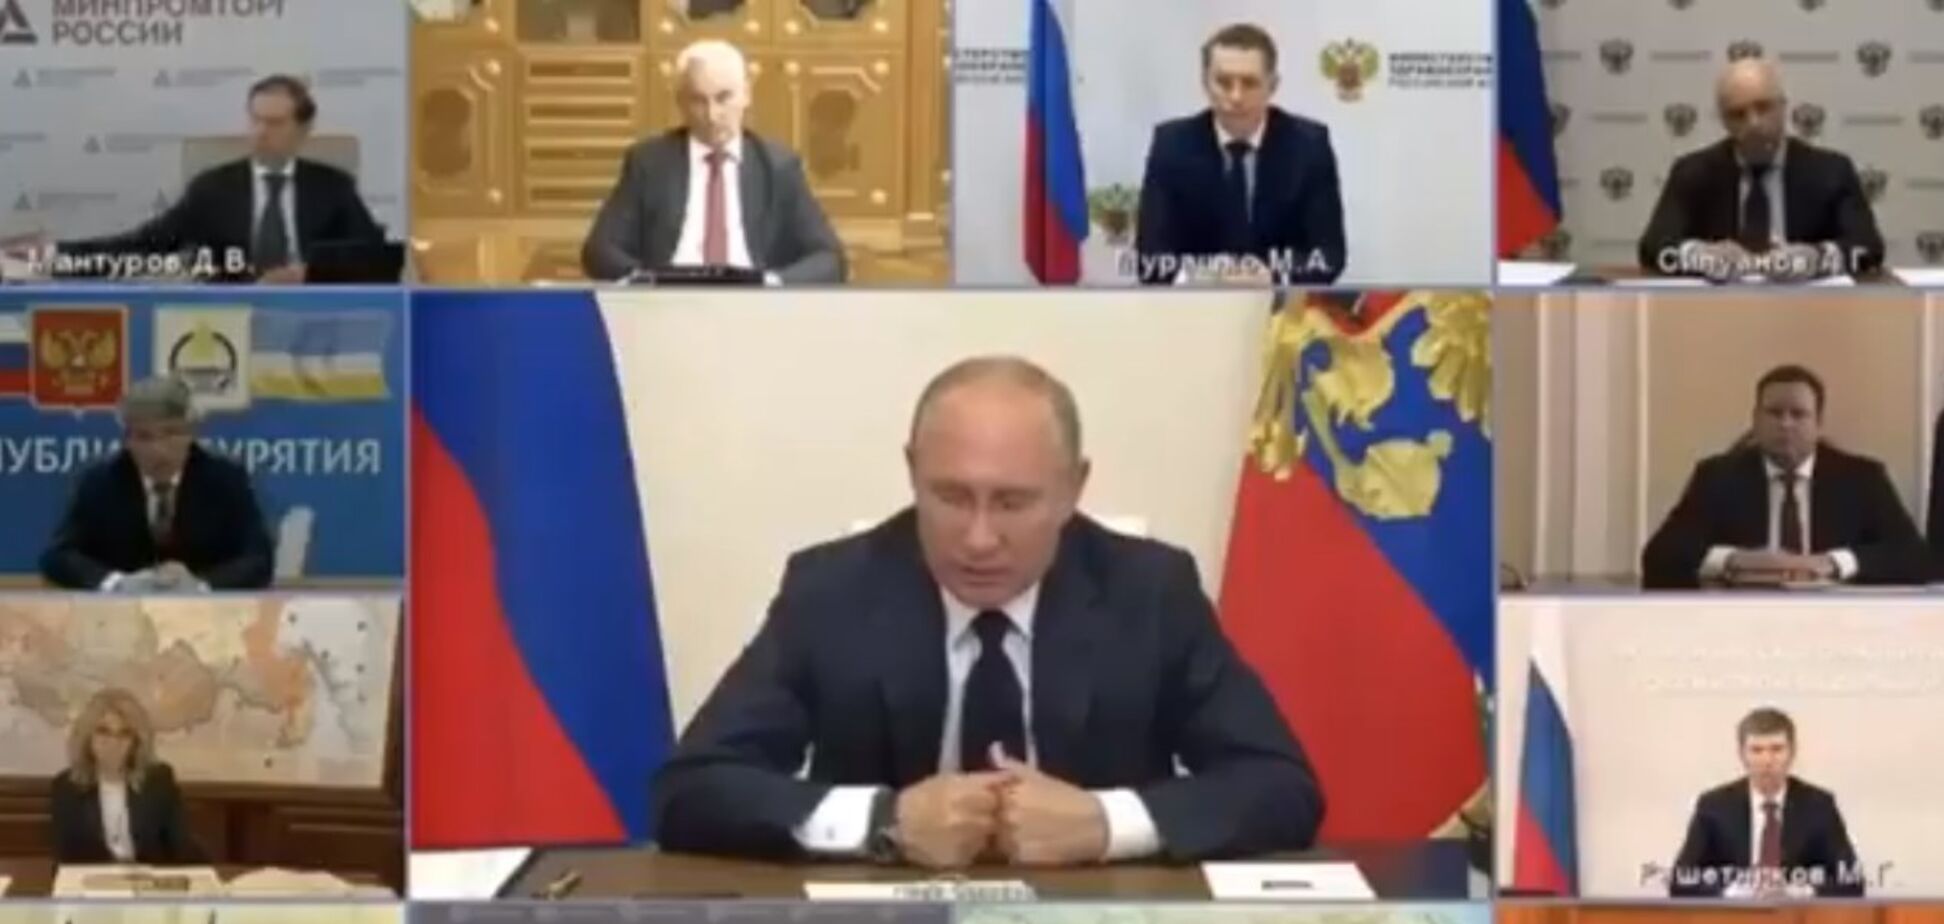 Видео грозного Путина с кулаками позабавило соцсети: они вспомнили о Хрущеве в ООН